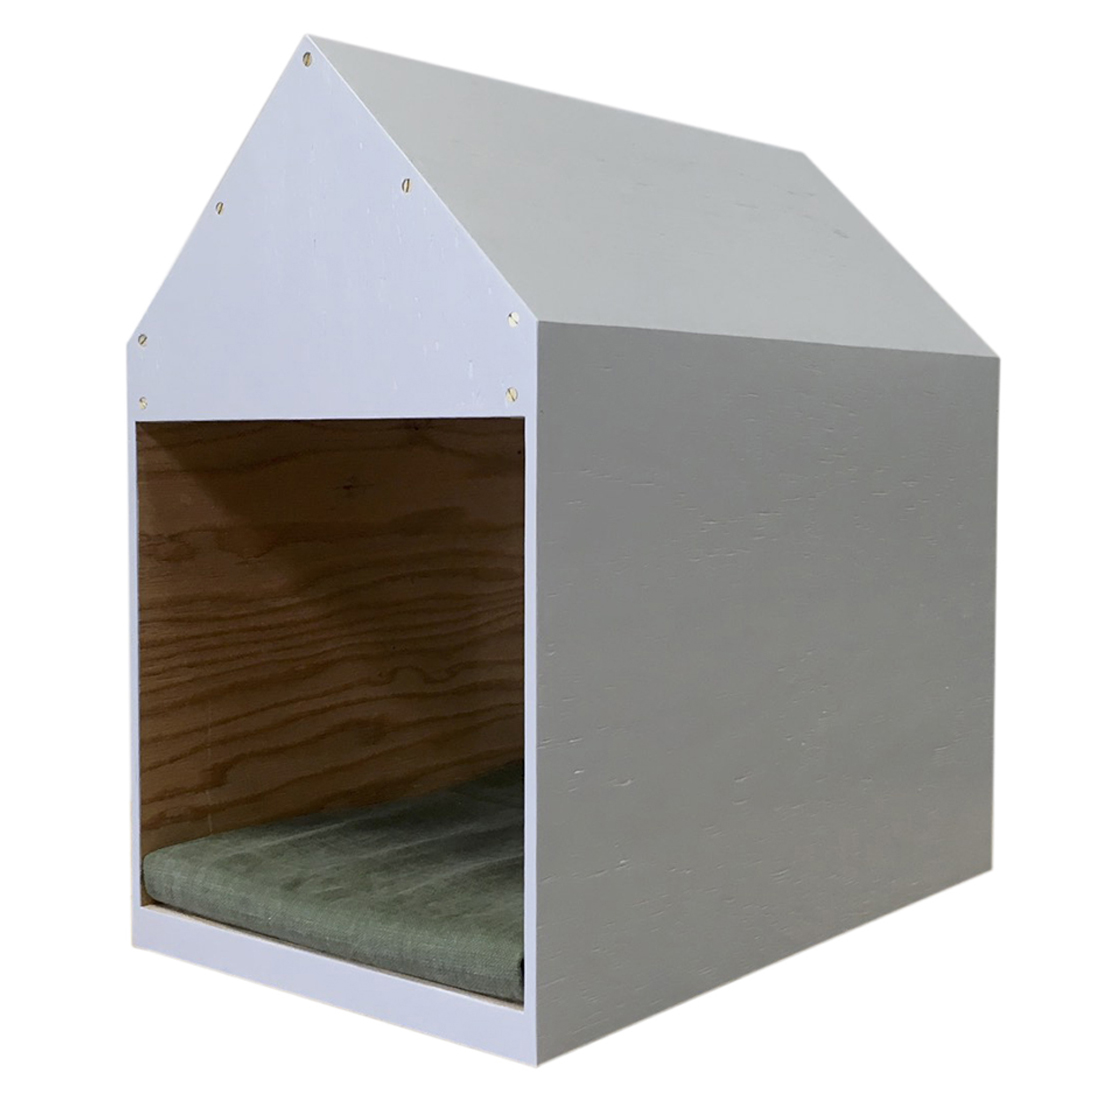 インテリアになる犬小屋 ドッグハウス ペットハウス 木製 グレー 室内用 Iichi ハンドメイド クラフト作品 手仕事品の通販